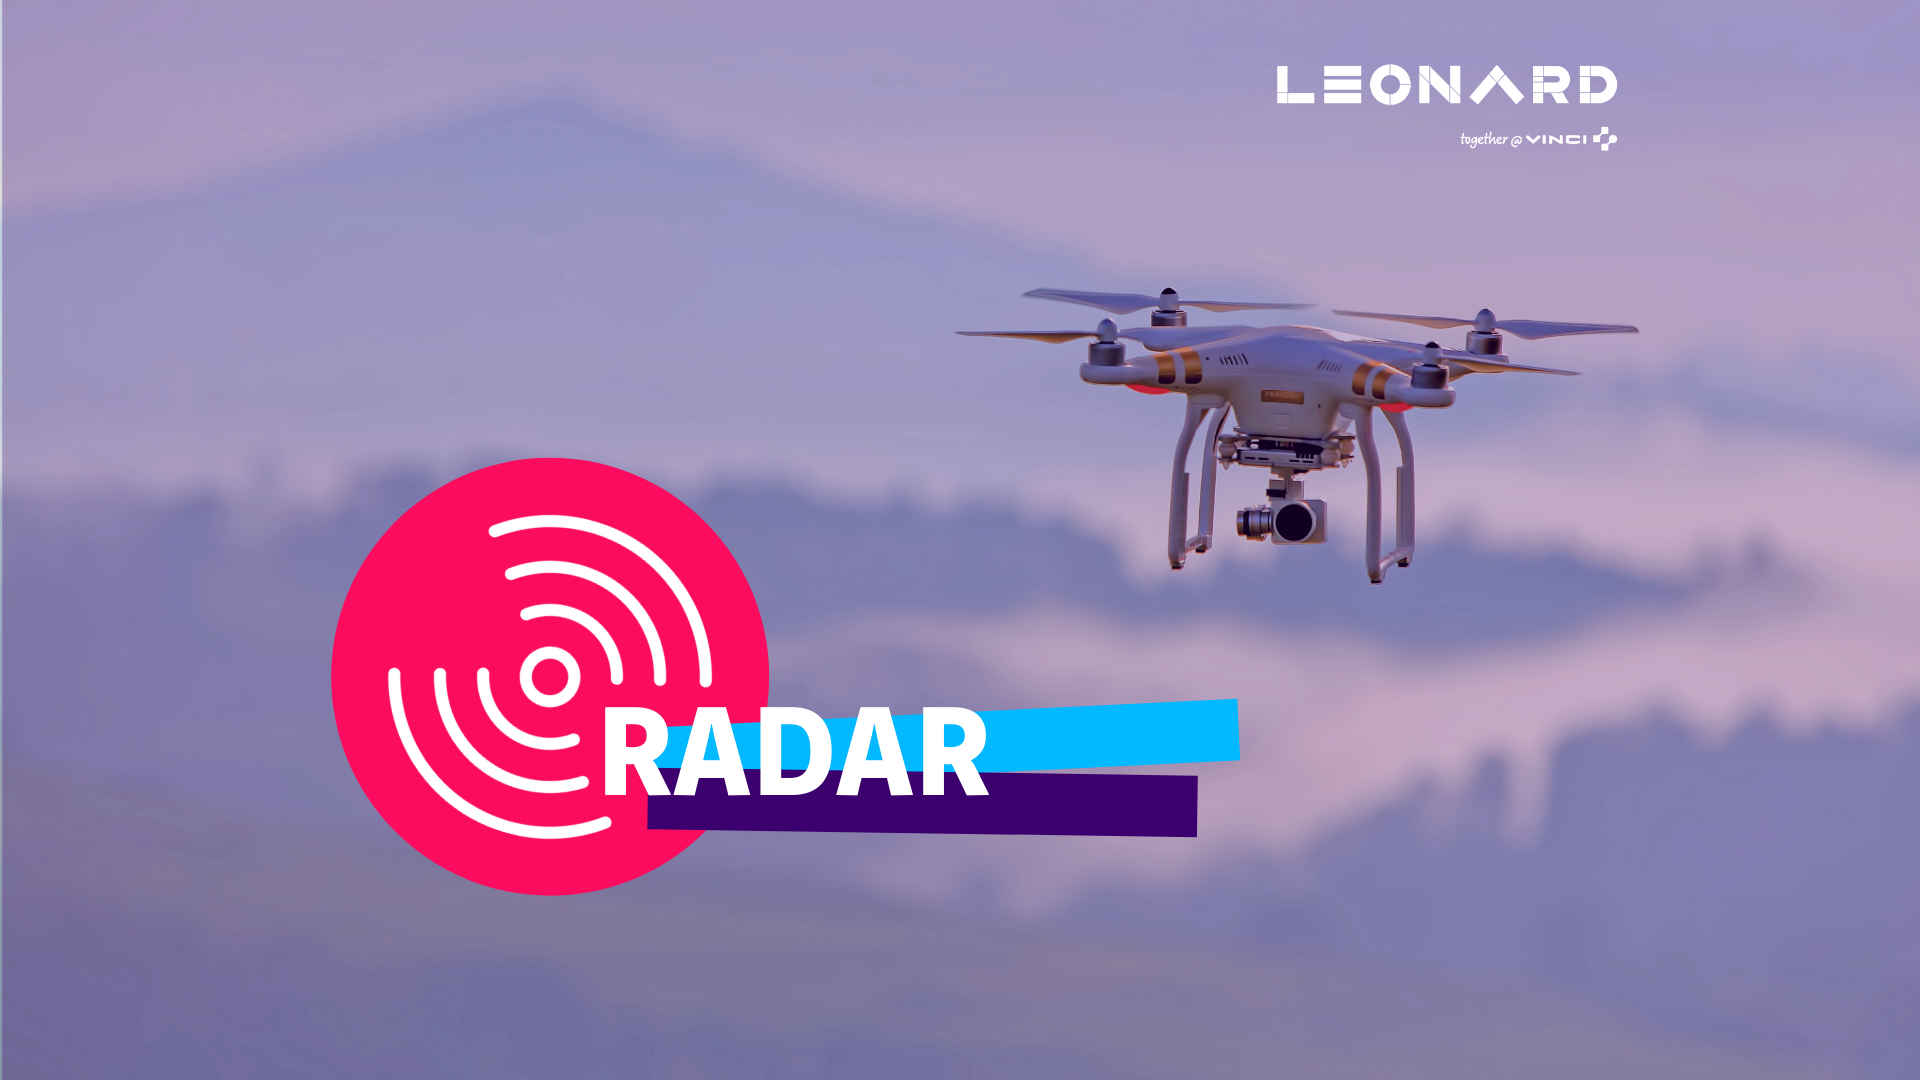 Radar – Notre sélection de business innovants #55